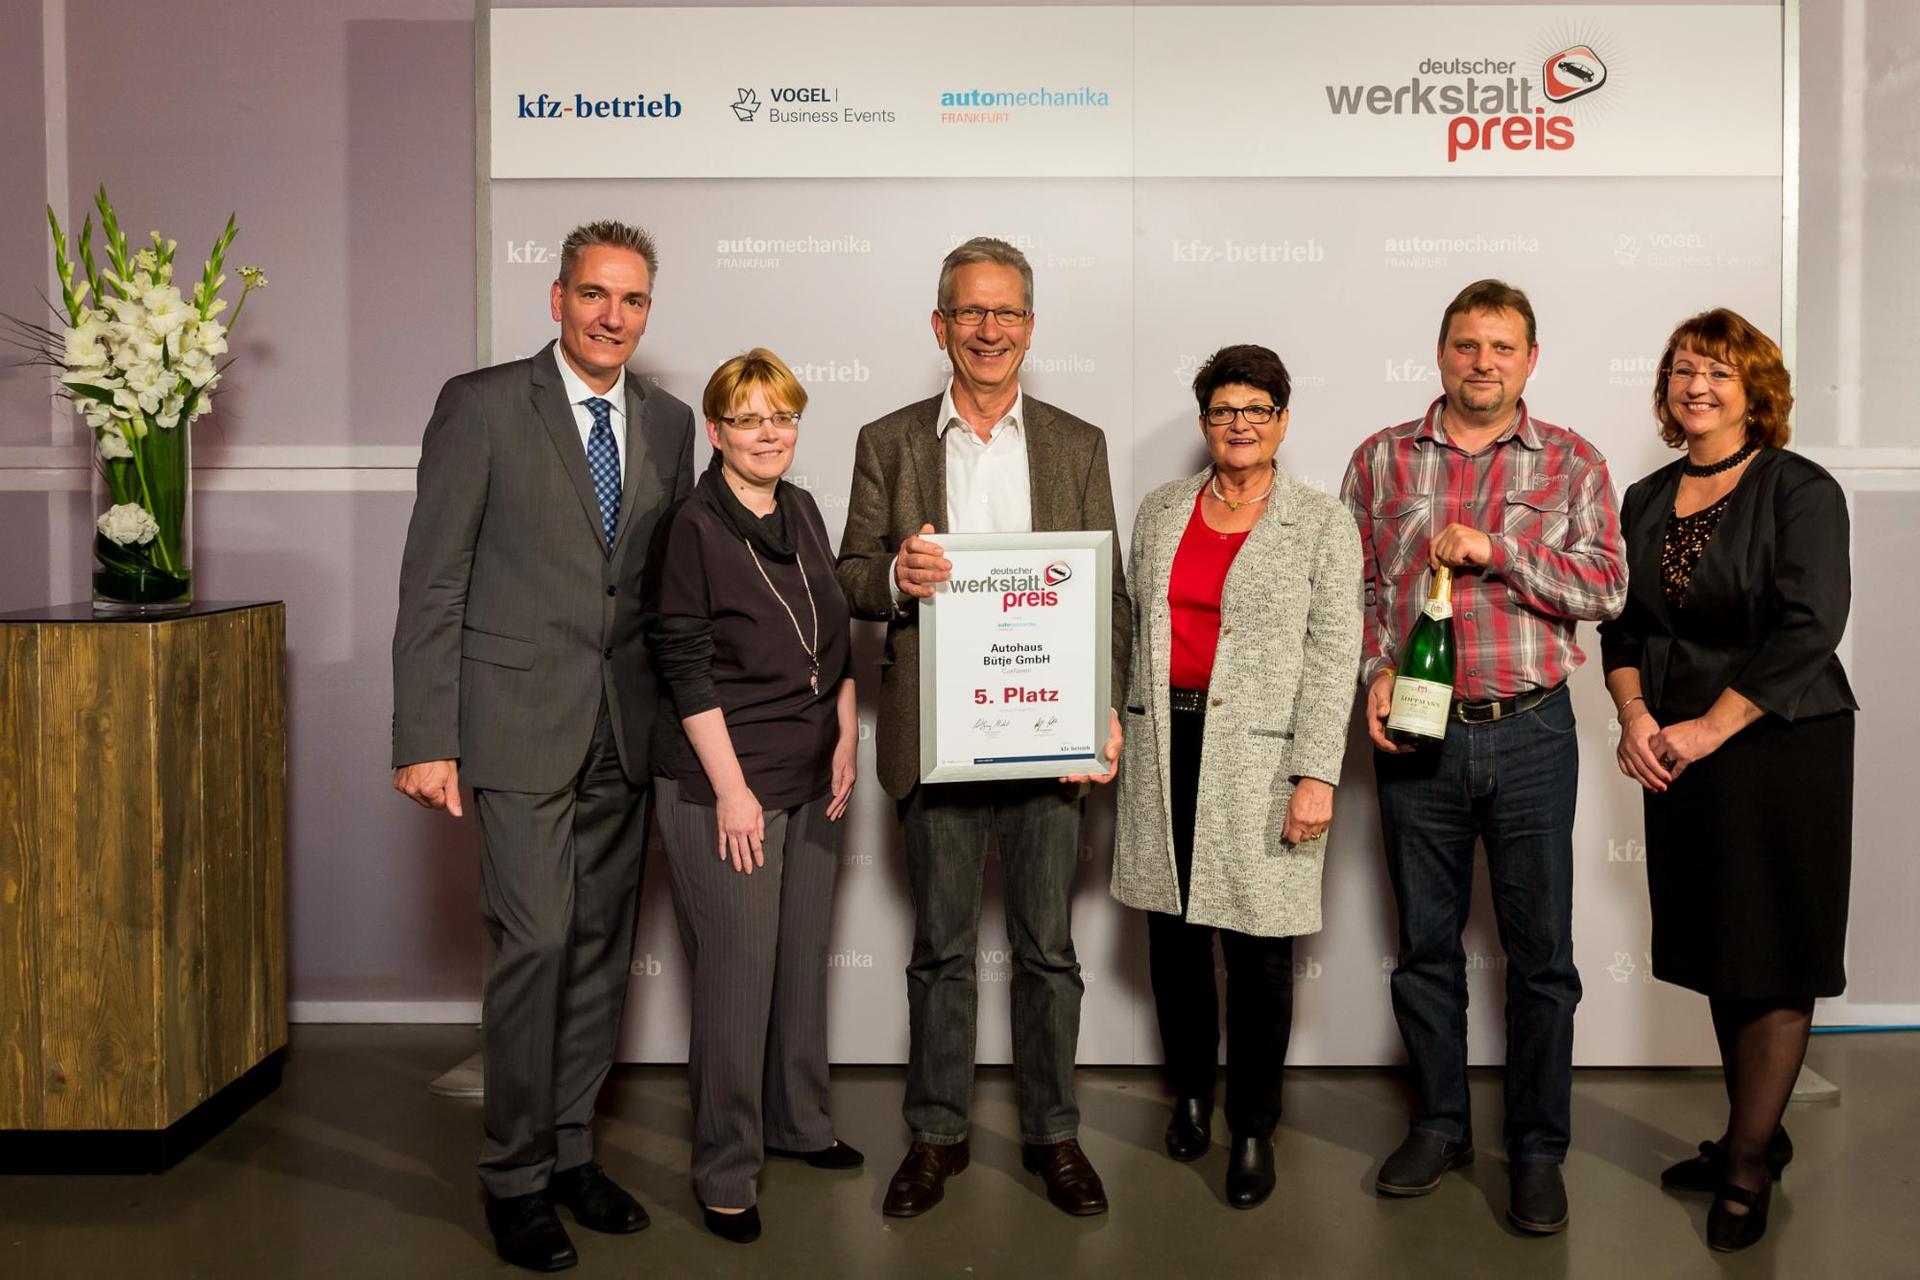 Deutscher Werkstattpreis 2017 - Die Auszeichnung für Freie Werkstätten mit exzellentem Servicegeschäft  Platz 5